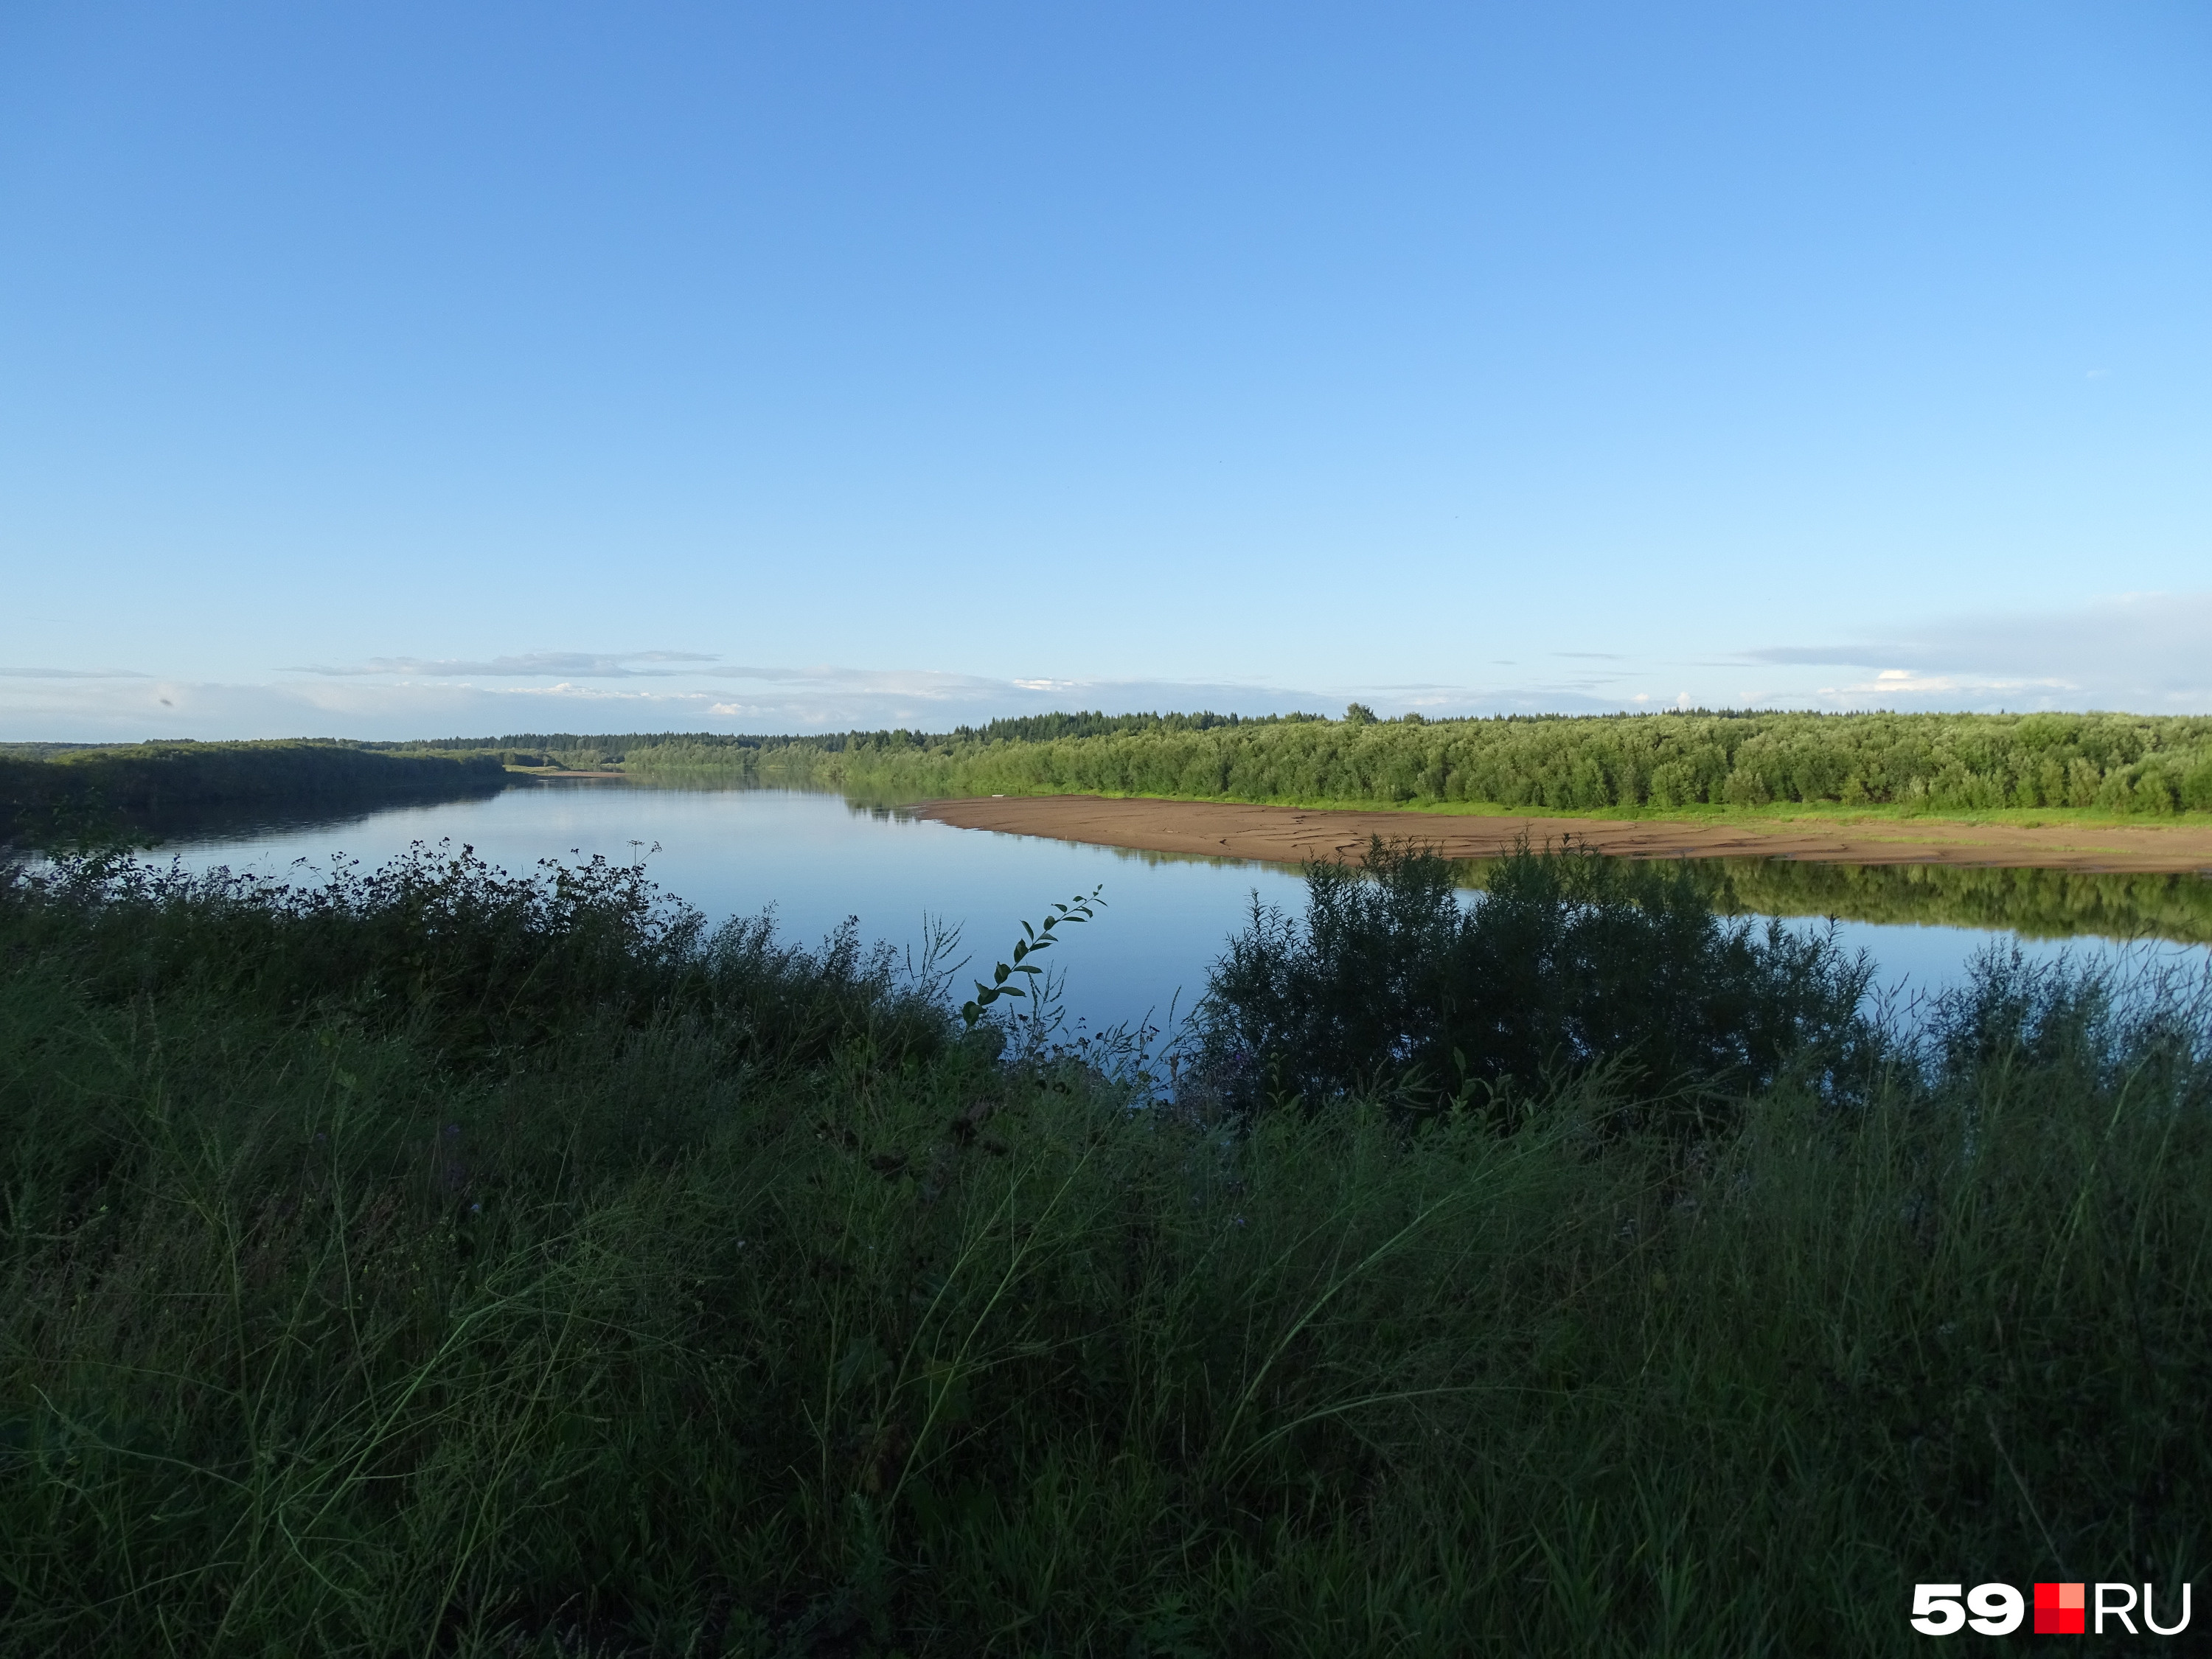 Вид на реку Колву. Местные жители мечтают о благоустроенной набережной и спуске к воде в этом месте